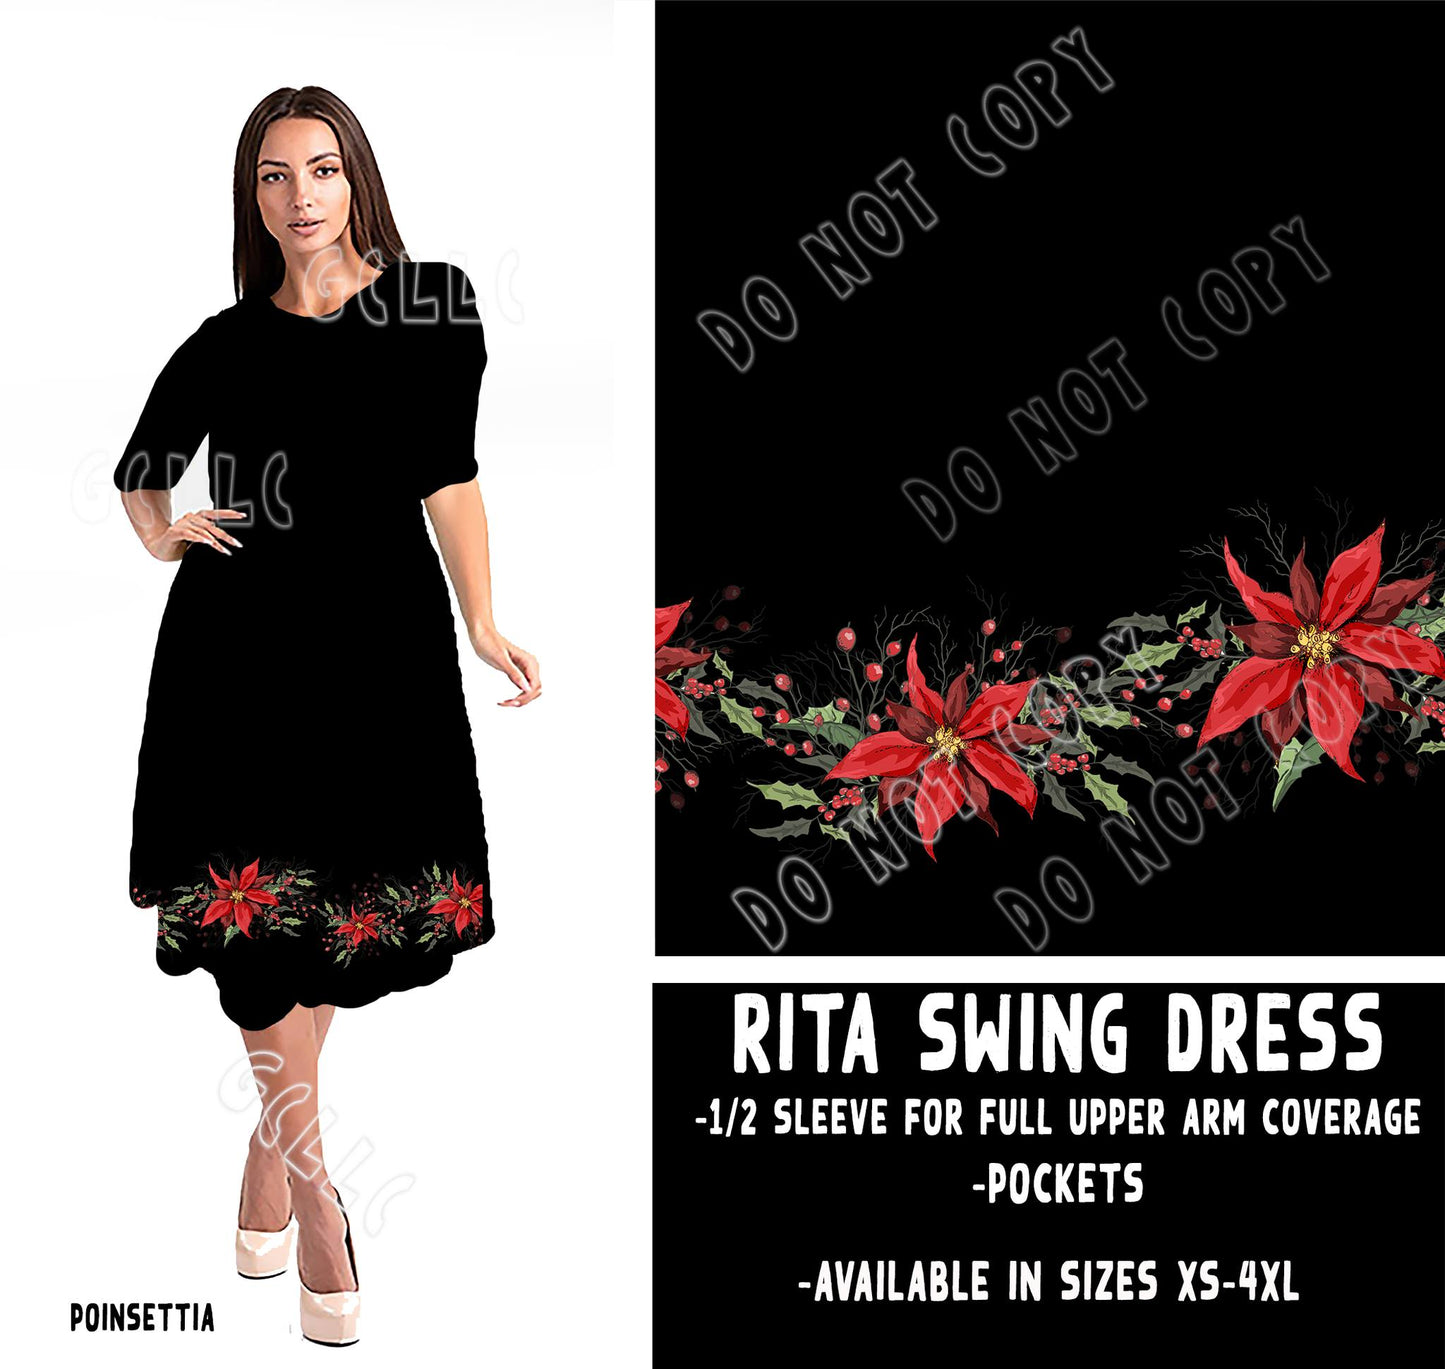 RITA SWING DRESS RUN-POINSETTIA